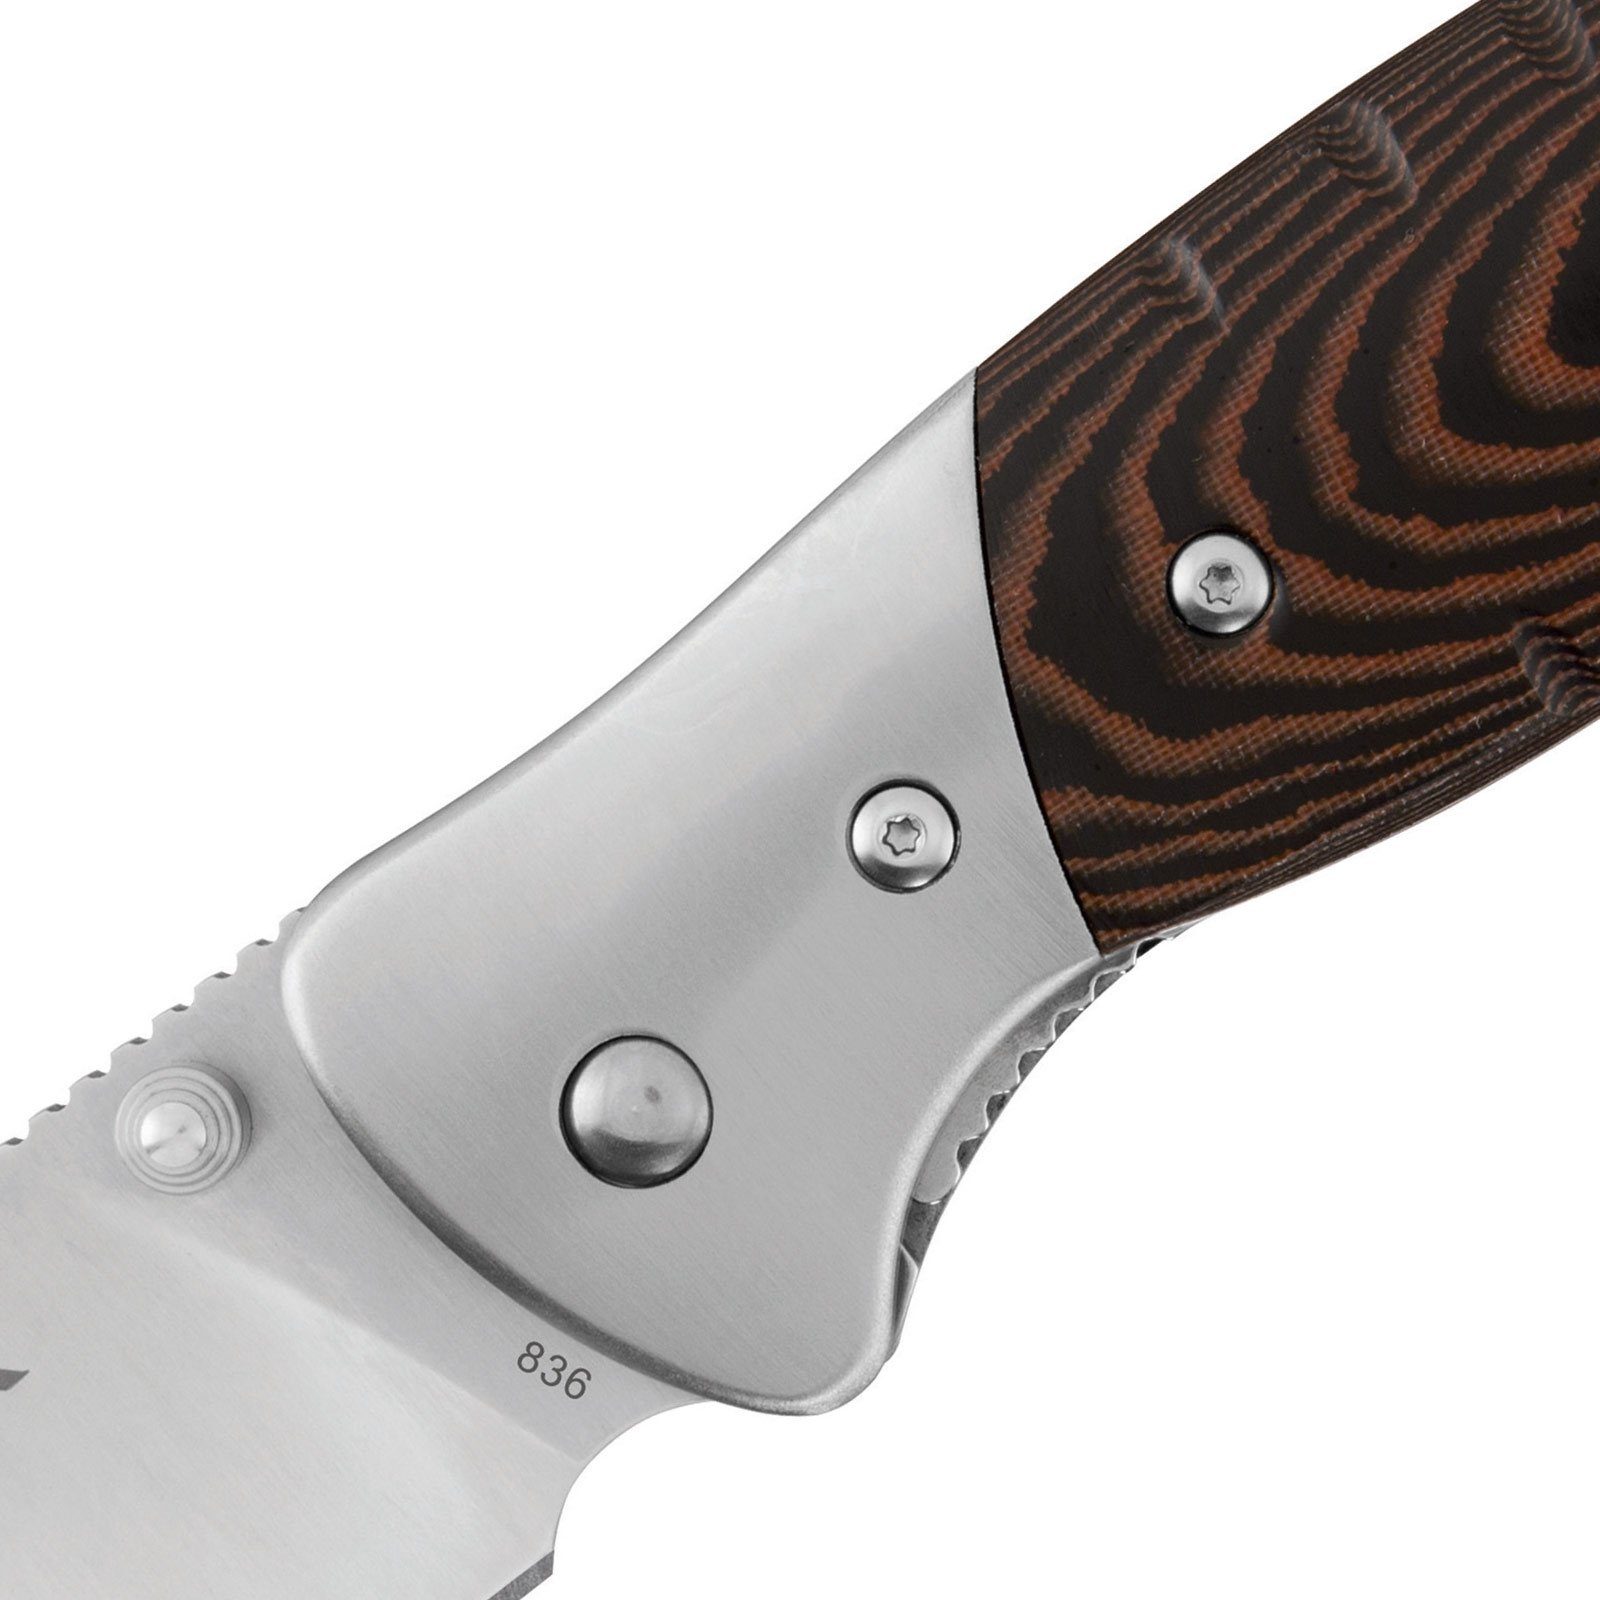 Buck Knives Einhandmesser Large Messer, Taschenmesser Klappmesser Selkirk Taschenmesser Groß Survival